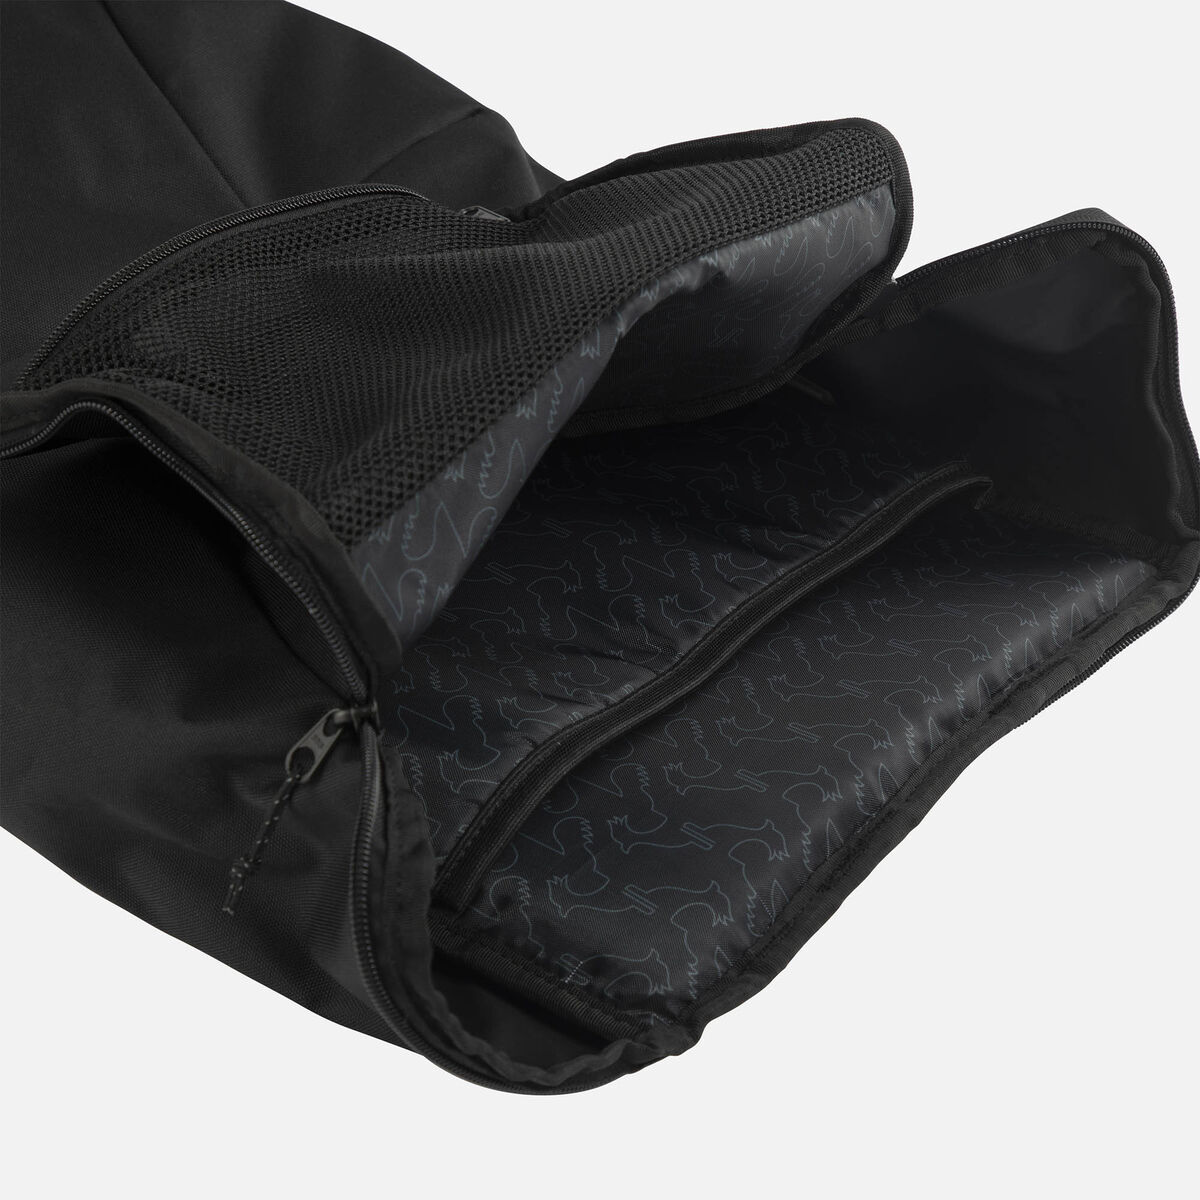 Unisex 20L black Commuter backpack